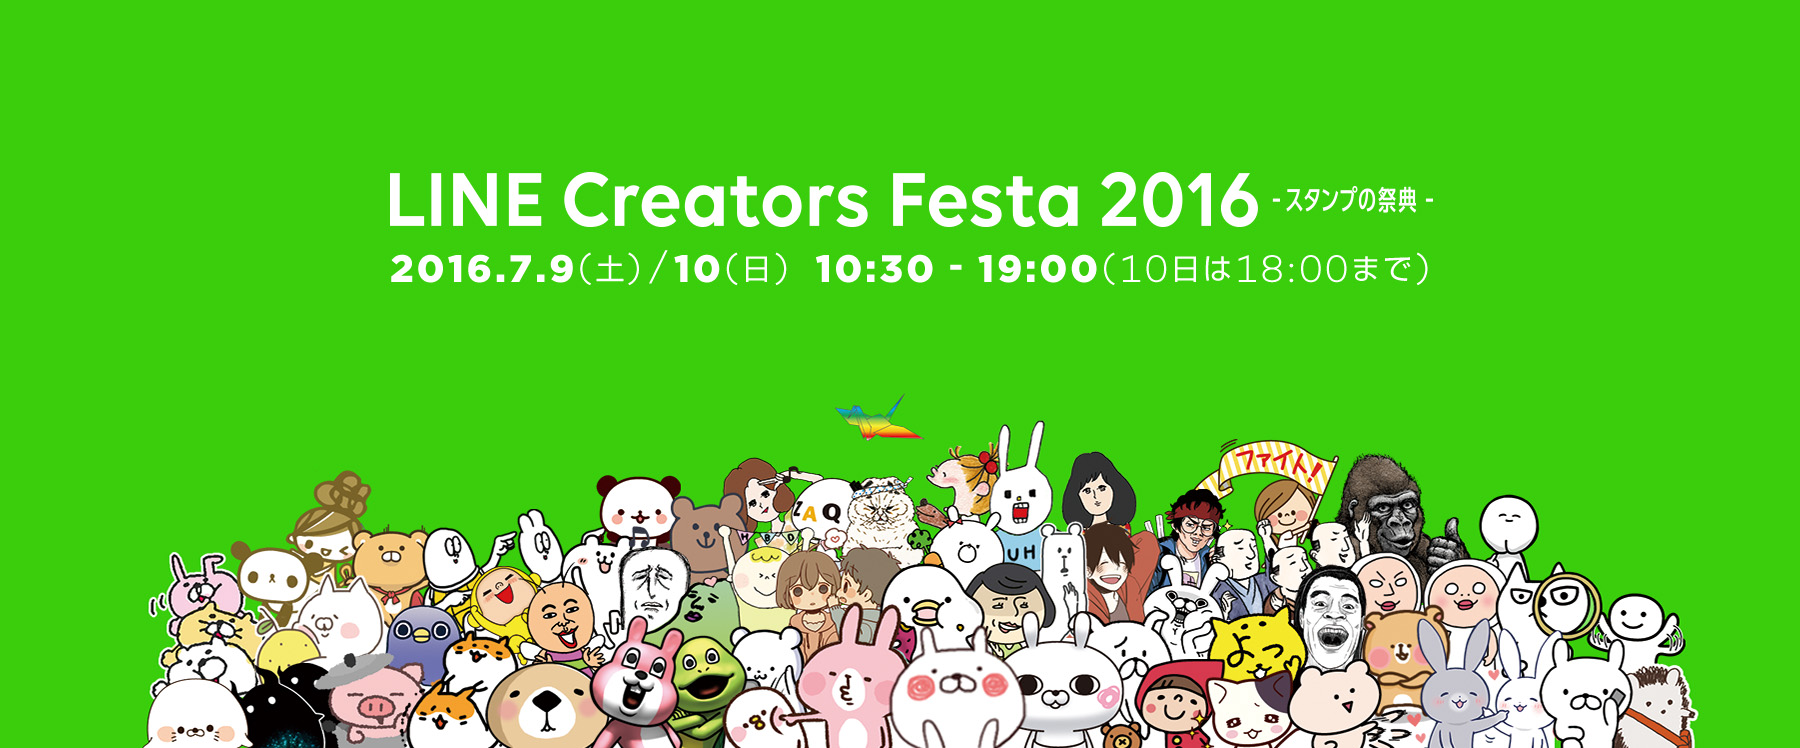 総勢40名を超える人気スタンプクリエイターが集結するユーザー参加型イベント Line Creators Festa 16 スタンプの祭典 を7月 9日 10日に開催 Line株式会社のプレスリリース